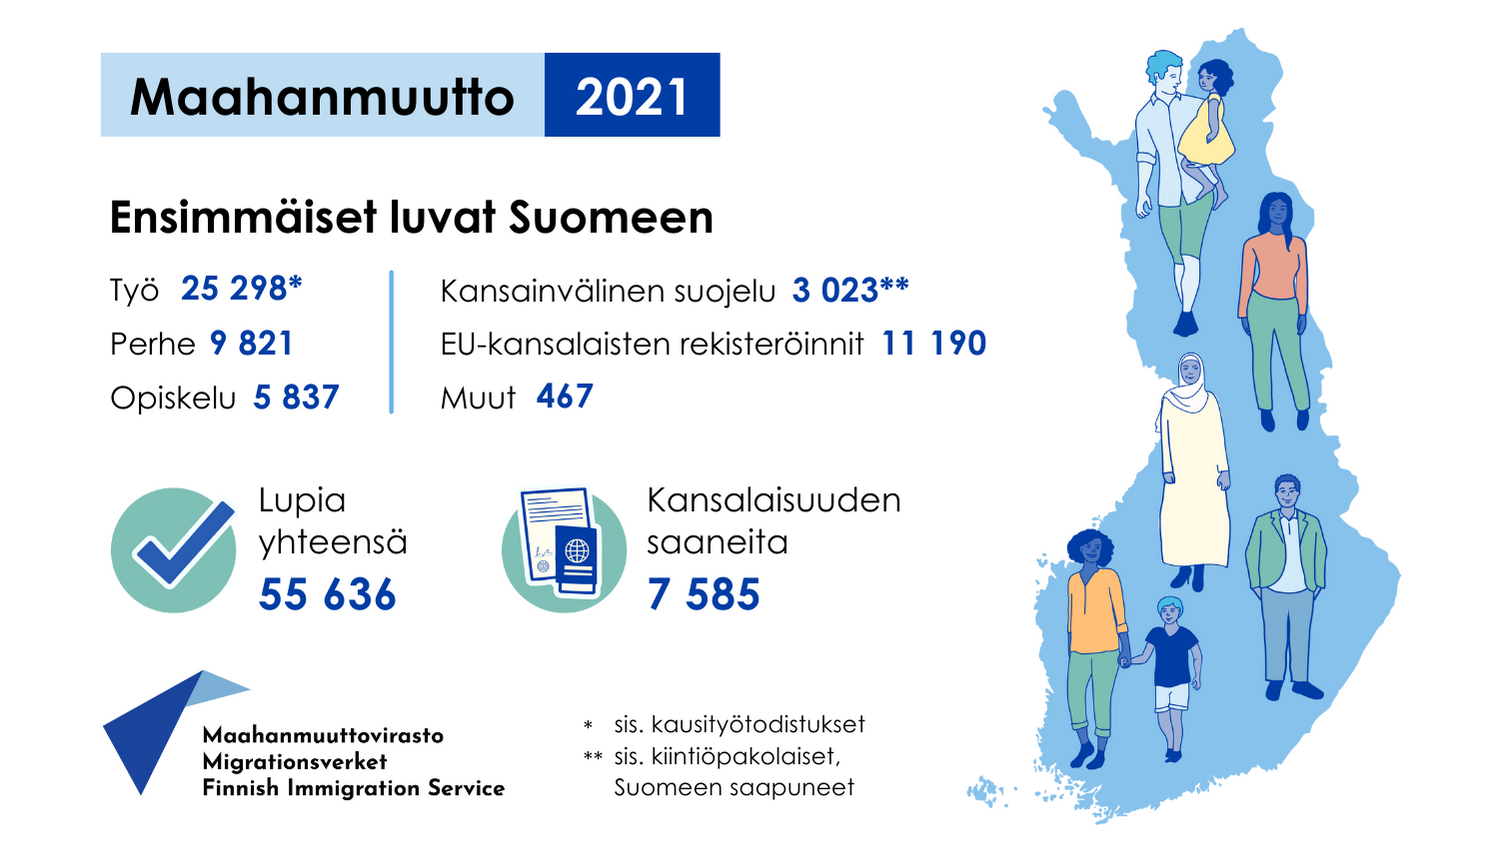 Infografiikka Maahanmuutto 2021, ensimmäiset luvat Suomeen: Työ 25298*, perhe 9821, opiskelu 5837, EU-kansalaisten rekisteröinnit 11190, kansainvälinen suojelu 3023**, muut 467. Lupia yhteensä 55636, kansalaisuuden saaneita 7585. *sis. kausityötodistukset, **sis. kiintiöpakolaiset, Suomeen saapuneet